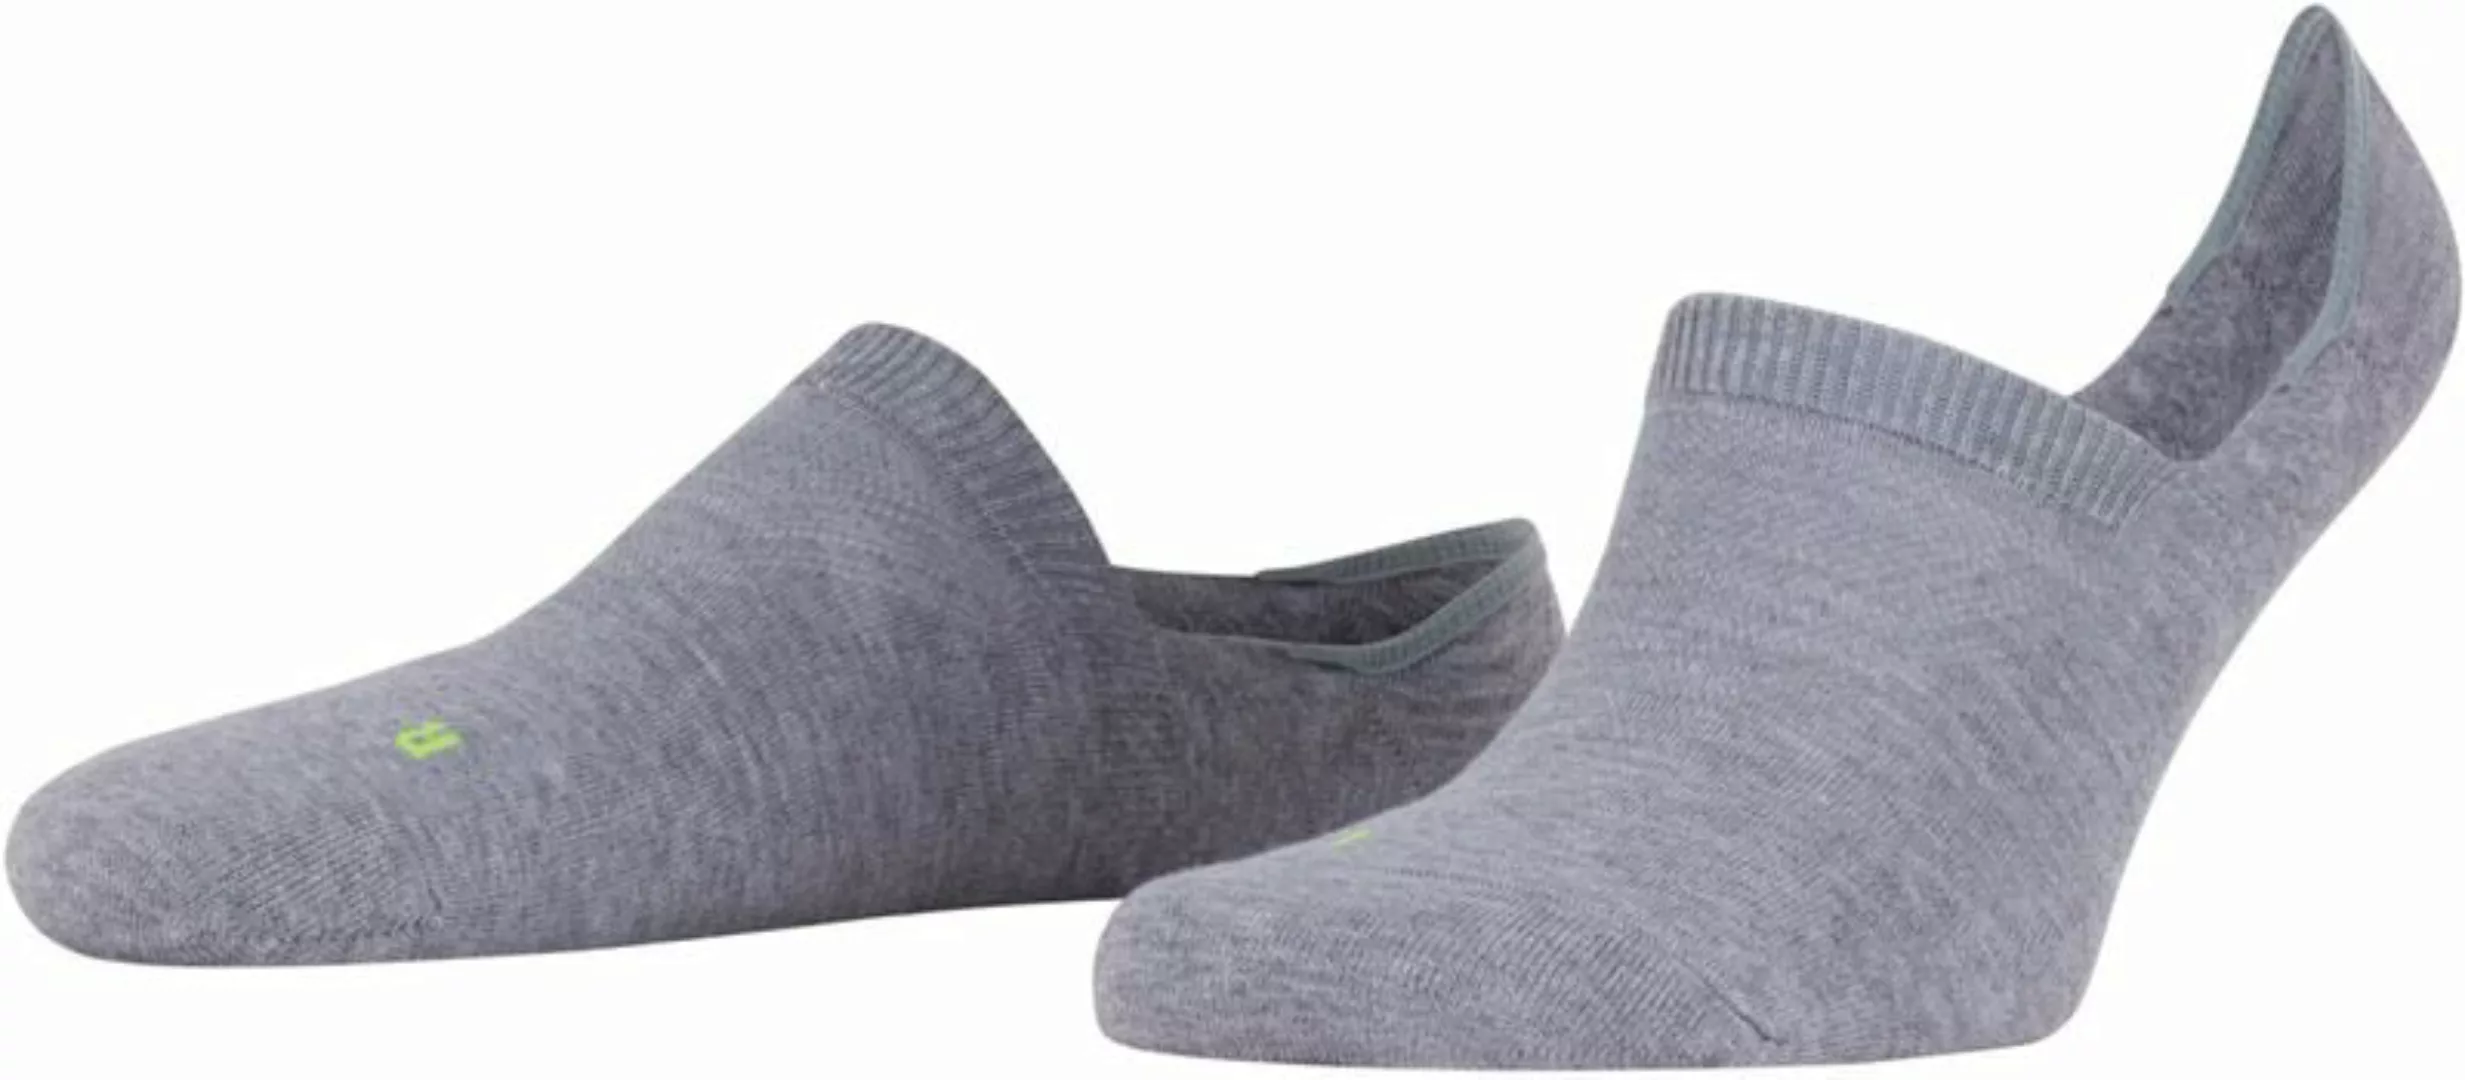 FALKE Cool Kick Antslip Socken Grau - Größe 39-41 günstig online kaufen